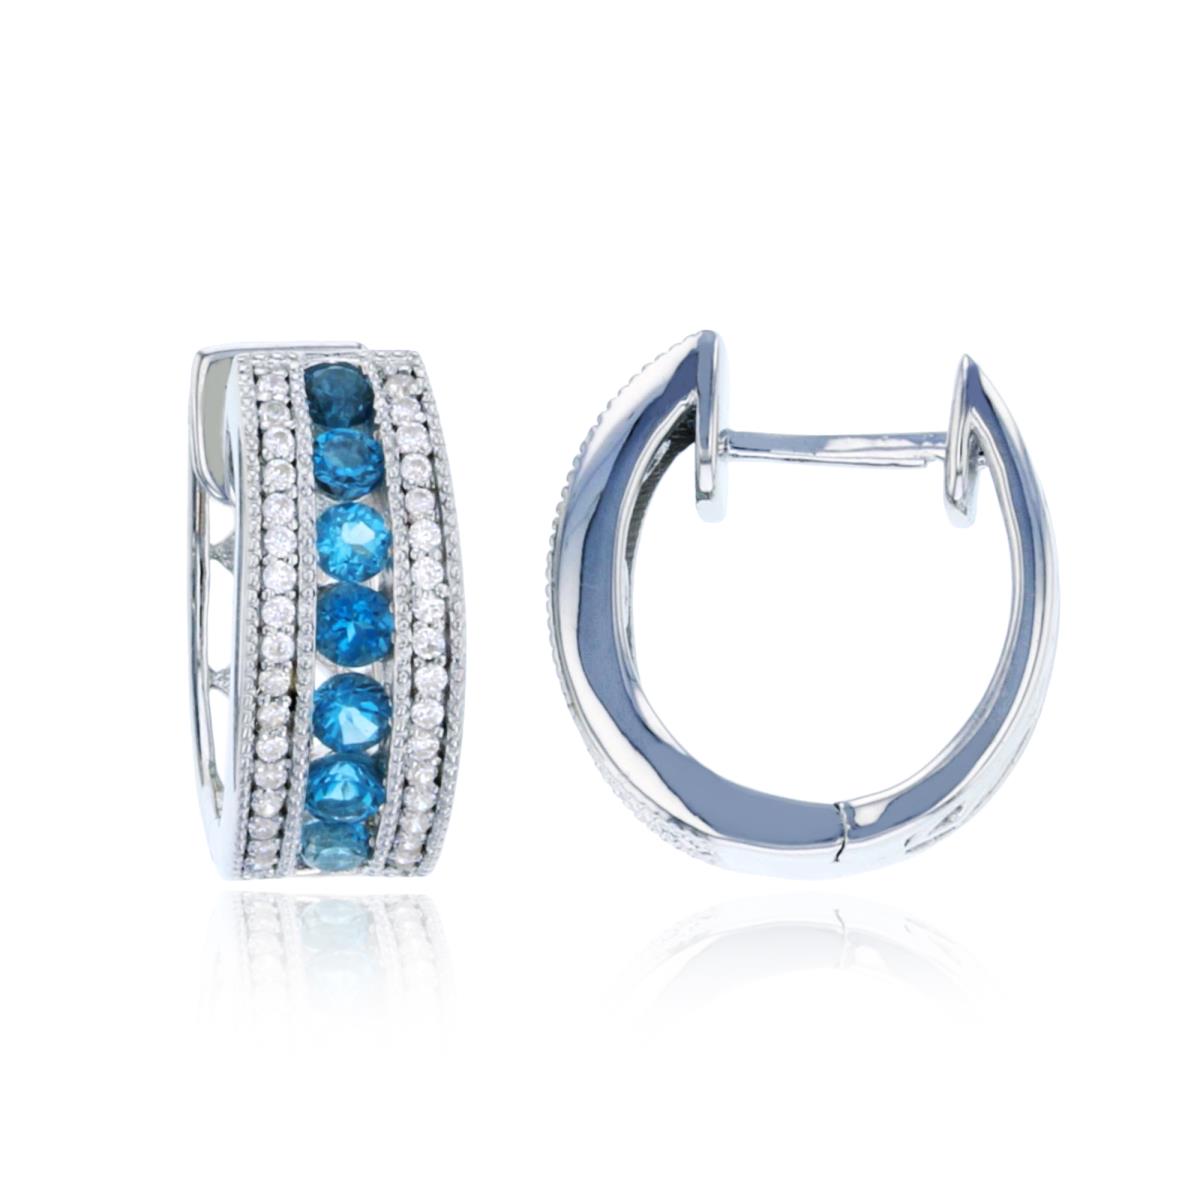 10K White Gold & Rd London Blue Topaz and Cr. White Sapphire Huggie Earrings